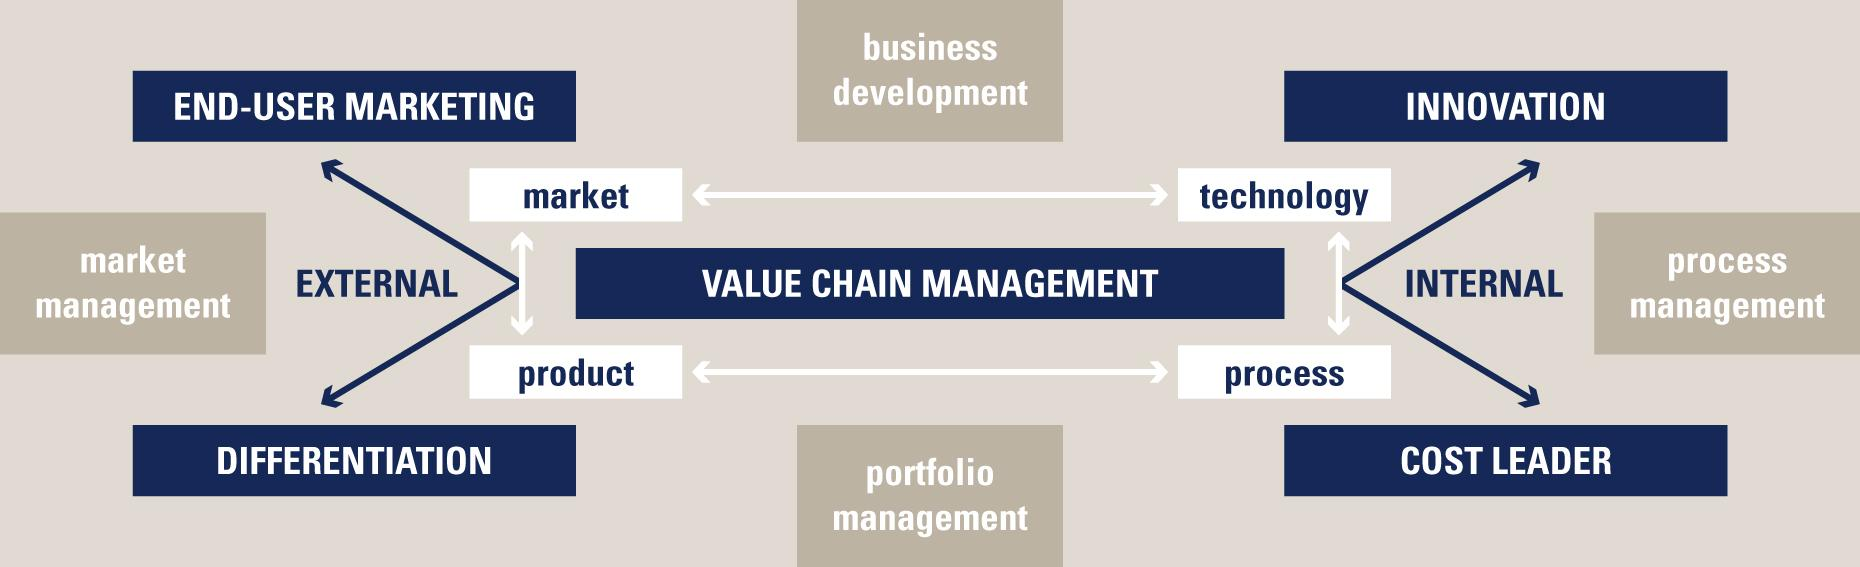 Strategisch kader: TenCate business model TenCate Onderscheidend business model binnen onze industriële sector Gerealiseerd door wereldwijde aanwezigheid en kritische massa Kostleiderschapstrategie